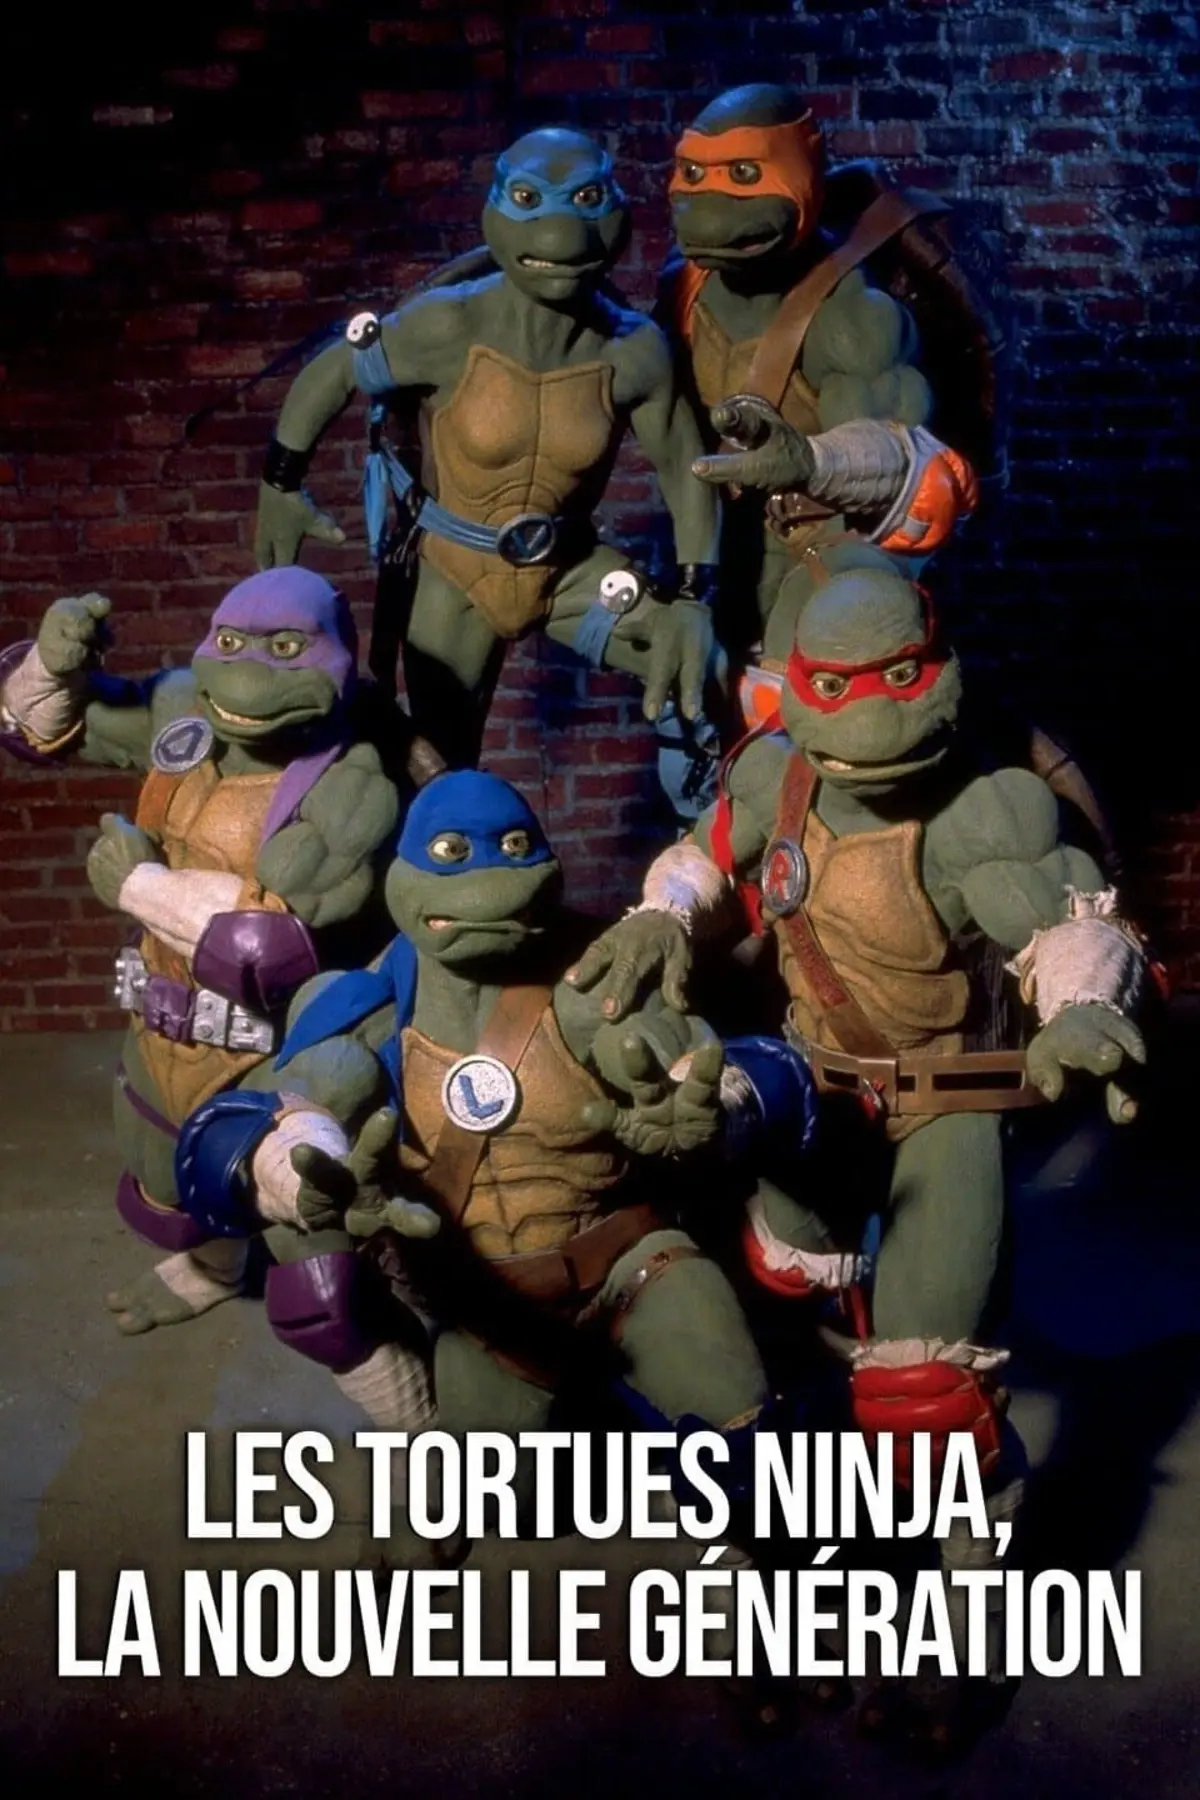 Tortues ninja, La nouvelle génération S01E13 Les clones